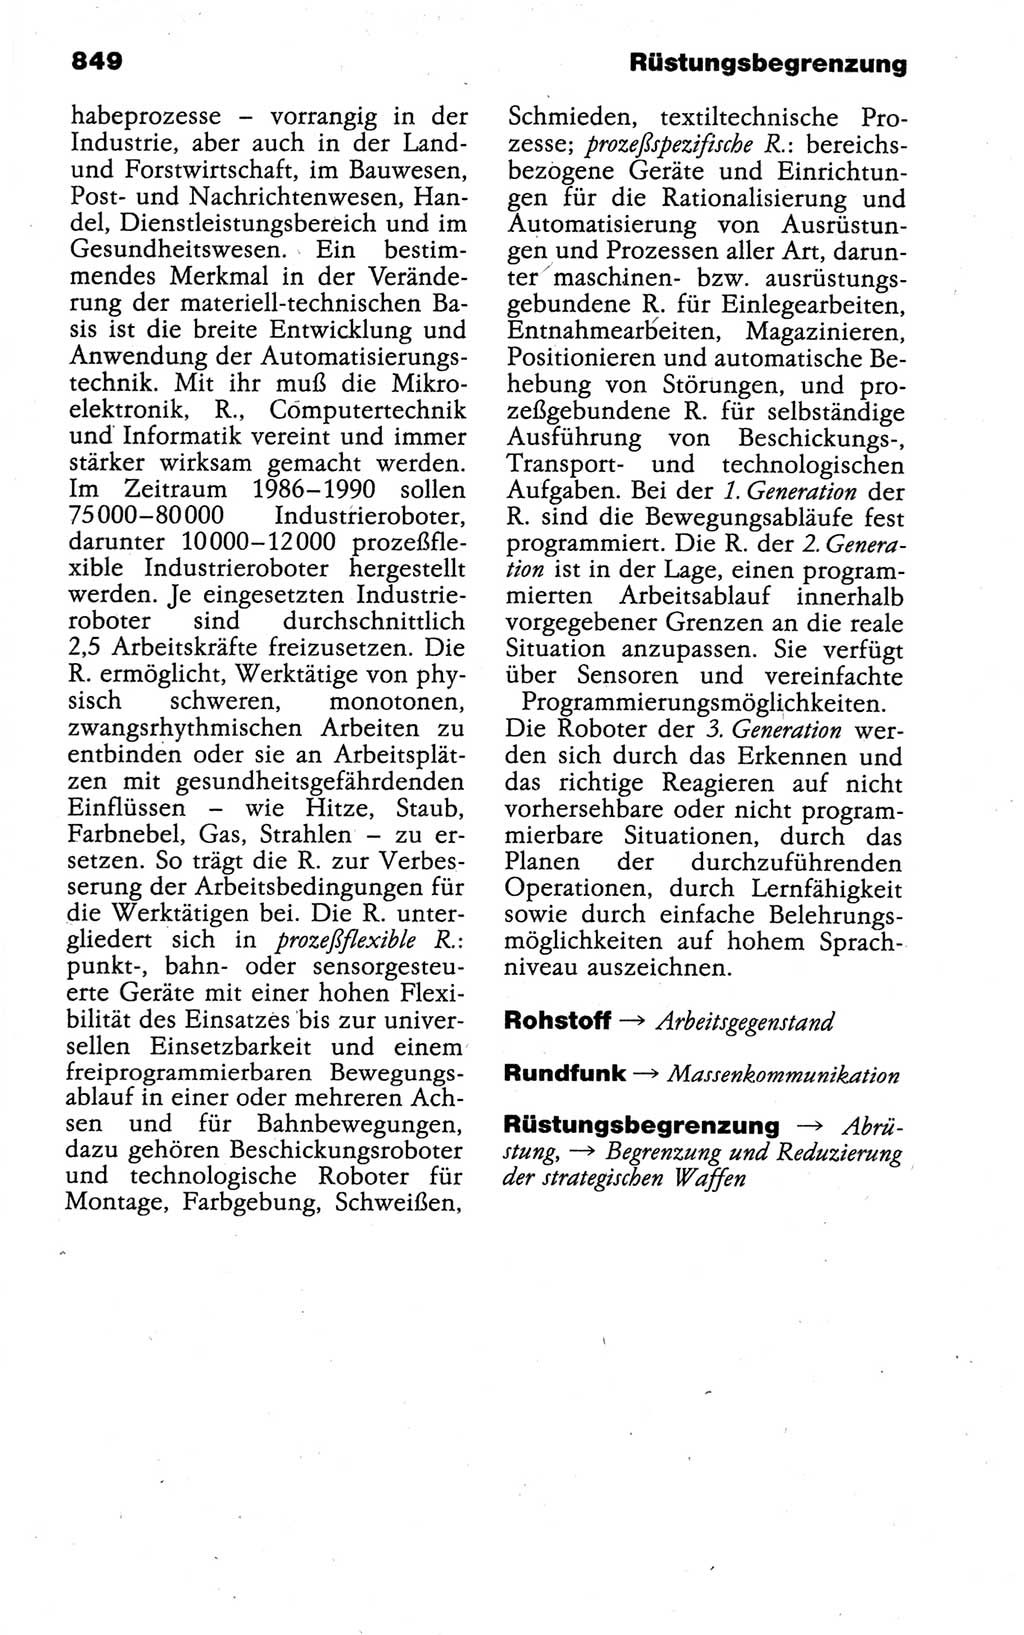 Kleines politisches Wörterbuch [Deutsche Demokratische Republik (DDR)] 1988, Seite 849 (Kl. pol. Wb. DDR 1988, S. 849)